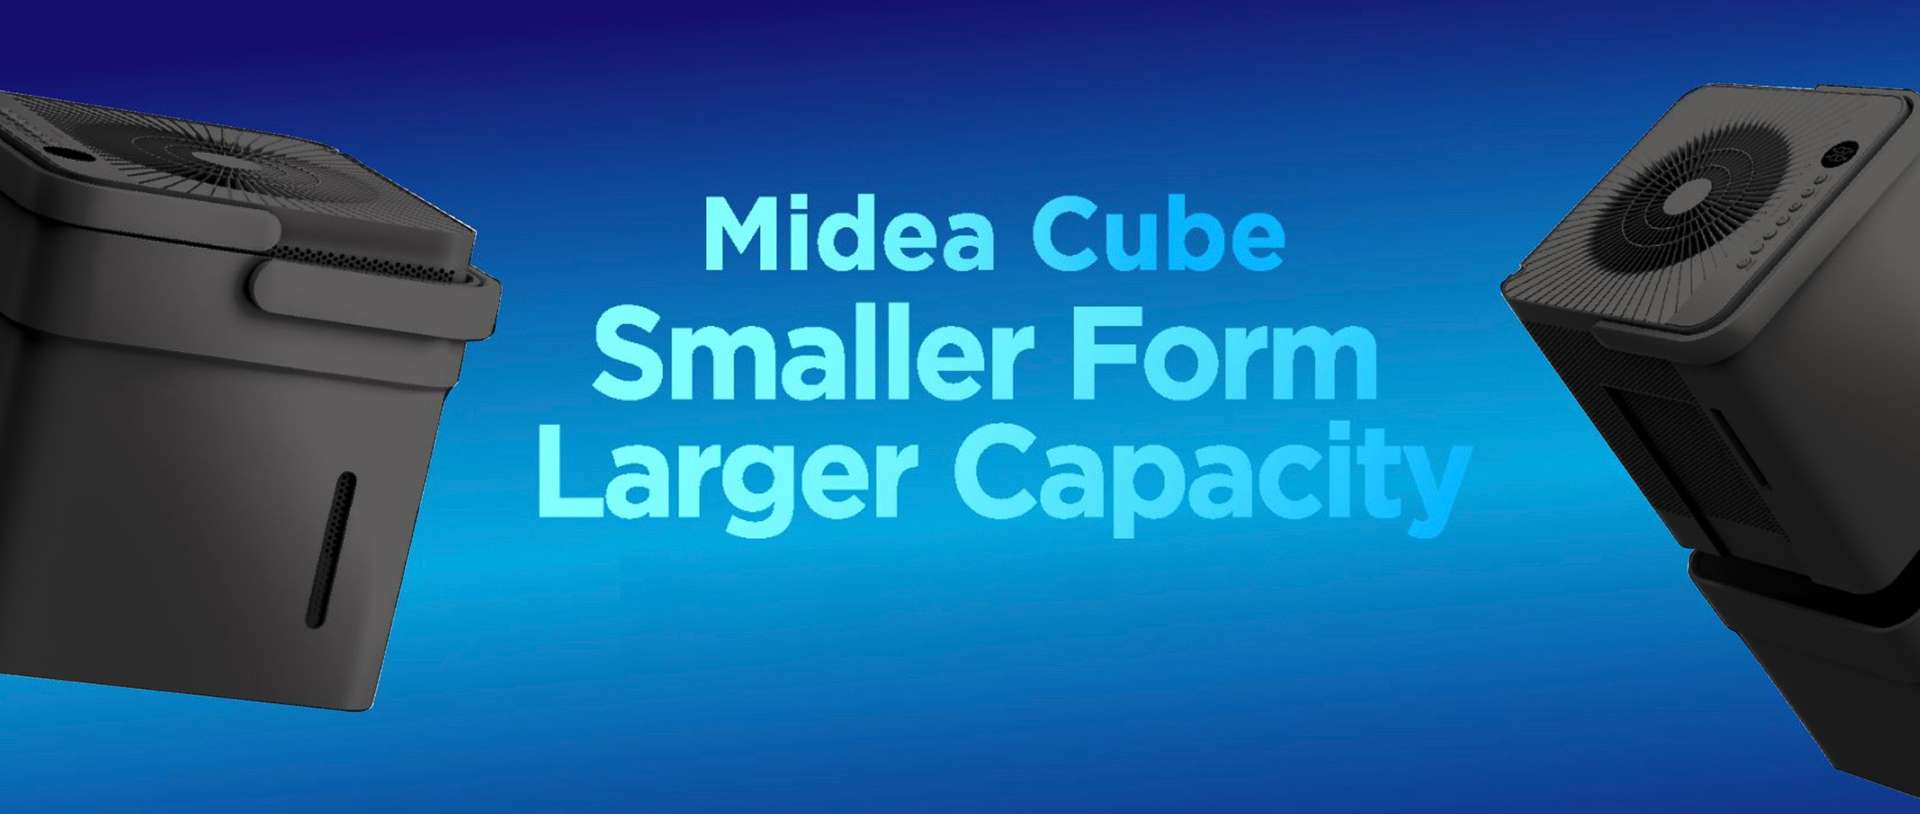 Deshumidificador Midea Cube dB09155CW3S